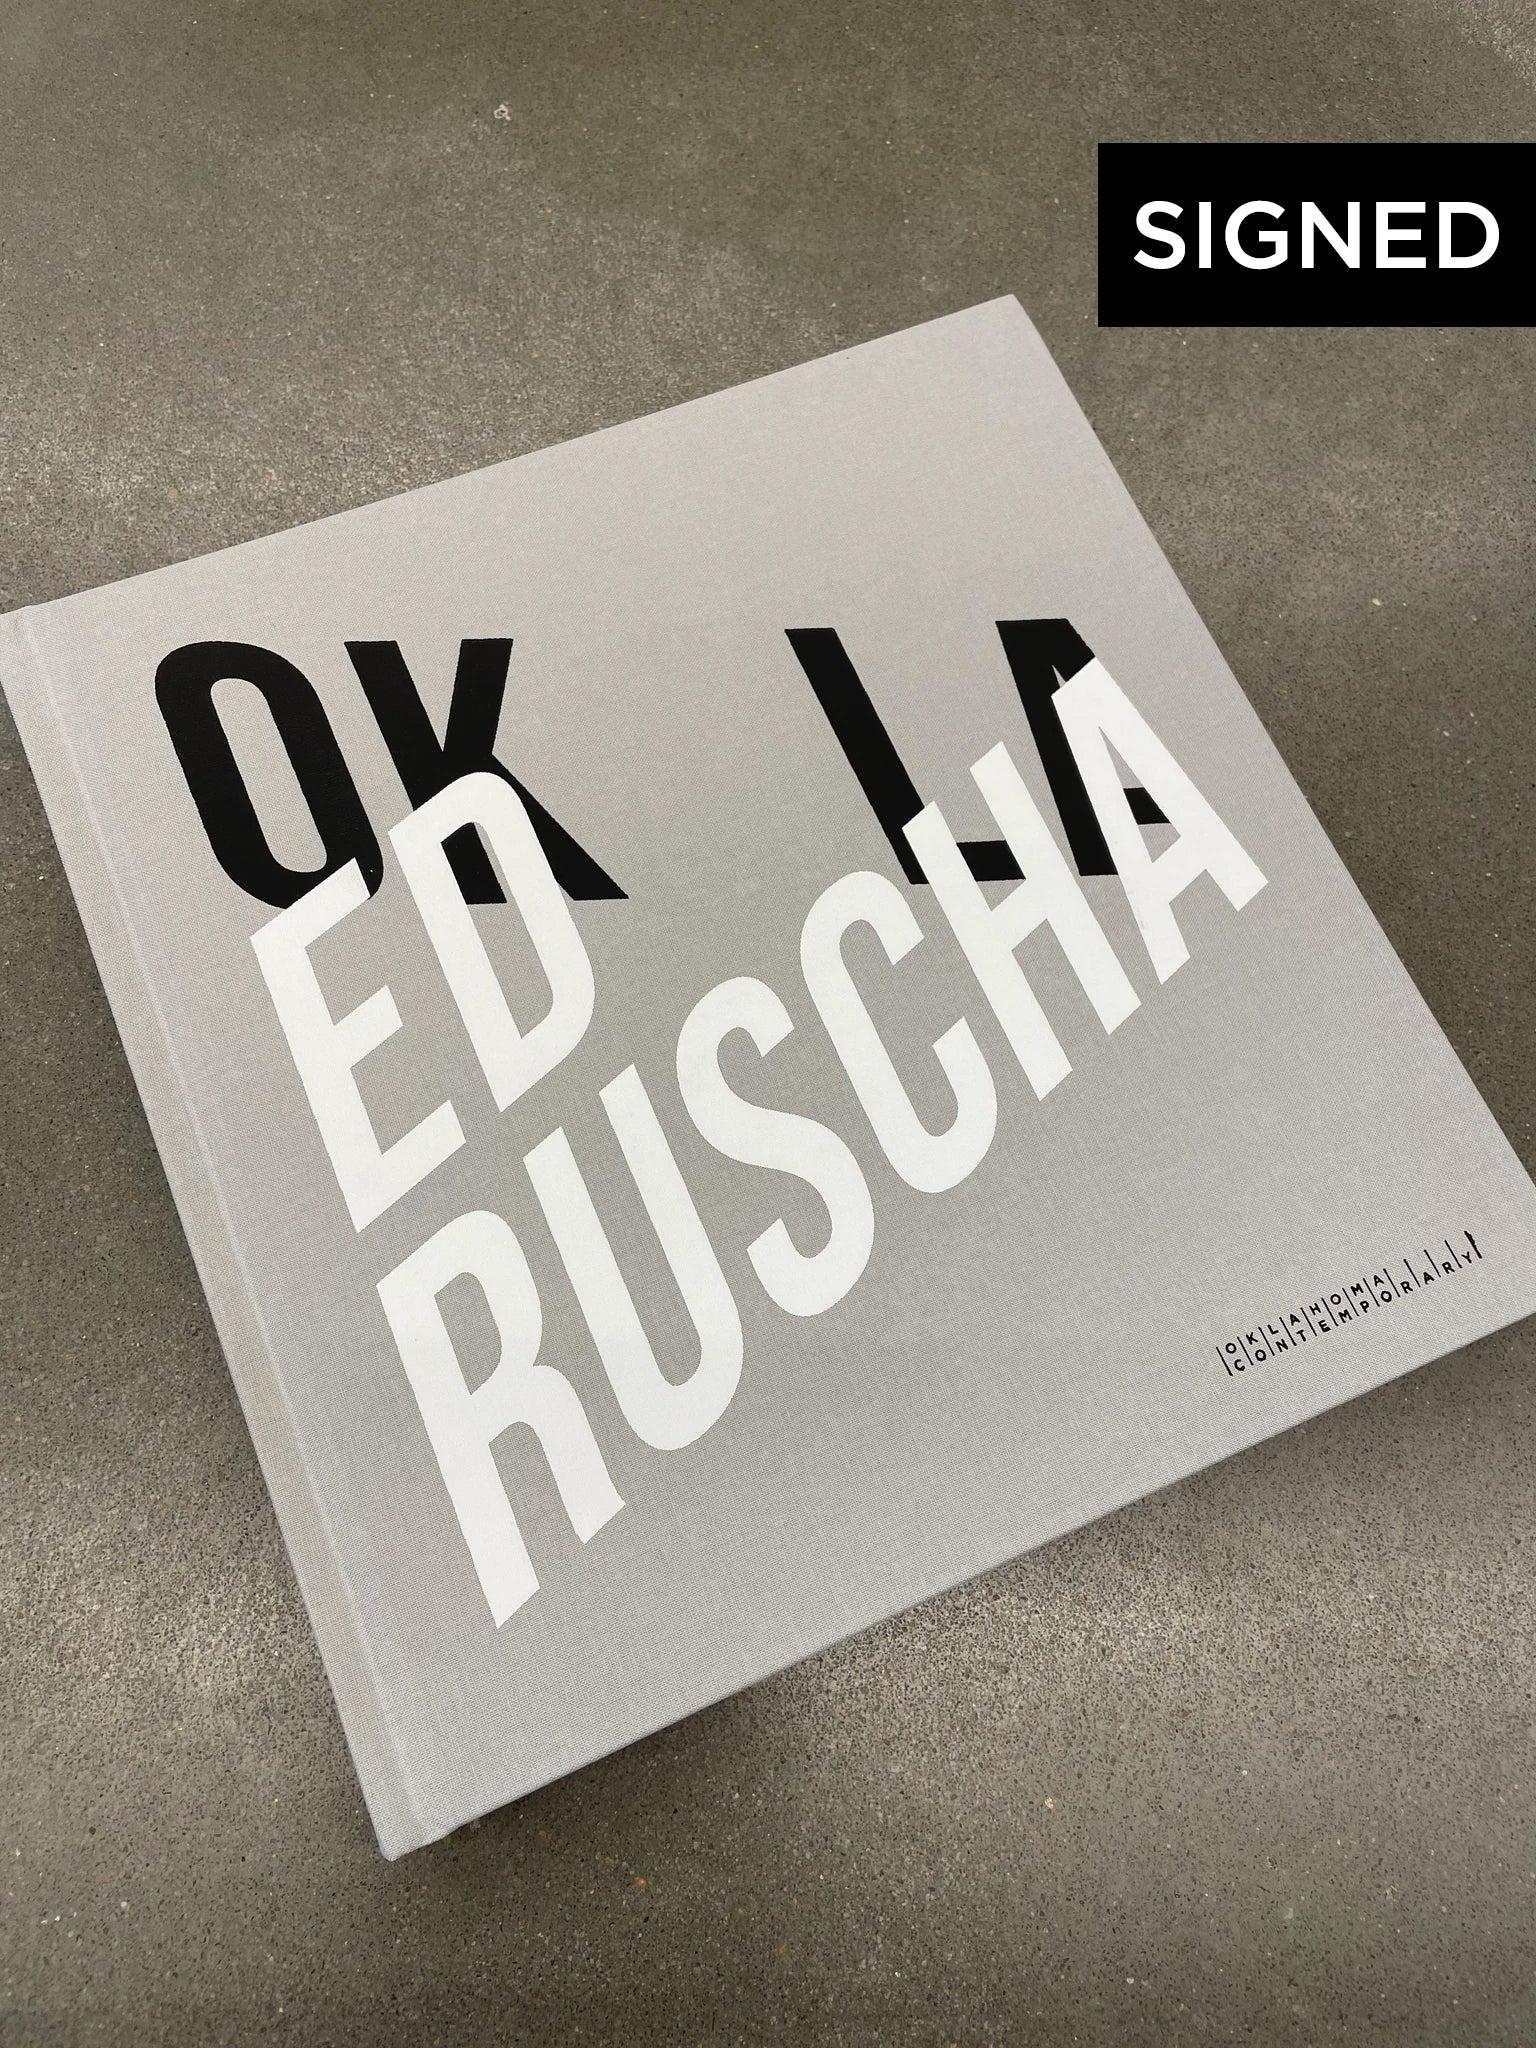 OKLA 2021 Katalog:

Limitierte Auflage von 100 Exemplaren, signiert vom Künstler Ed Ruscha

Dieser vollständig illustrierte Katalog dokumentiert die bahnbrechende Ausstellung, die in der Oklahoma Contemporary gezeigt wurde. Das gebundene Buch